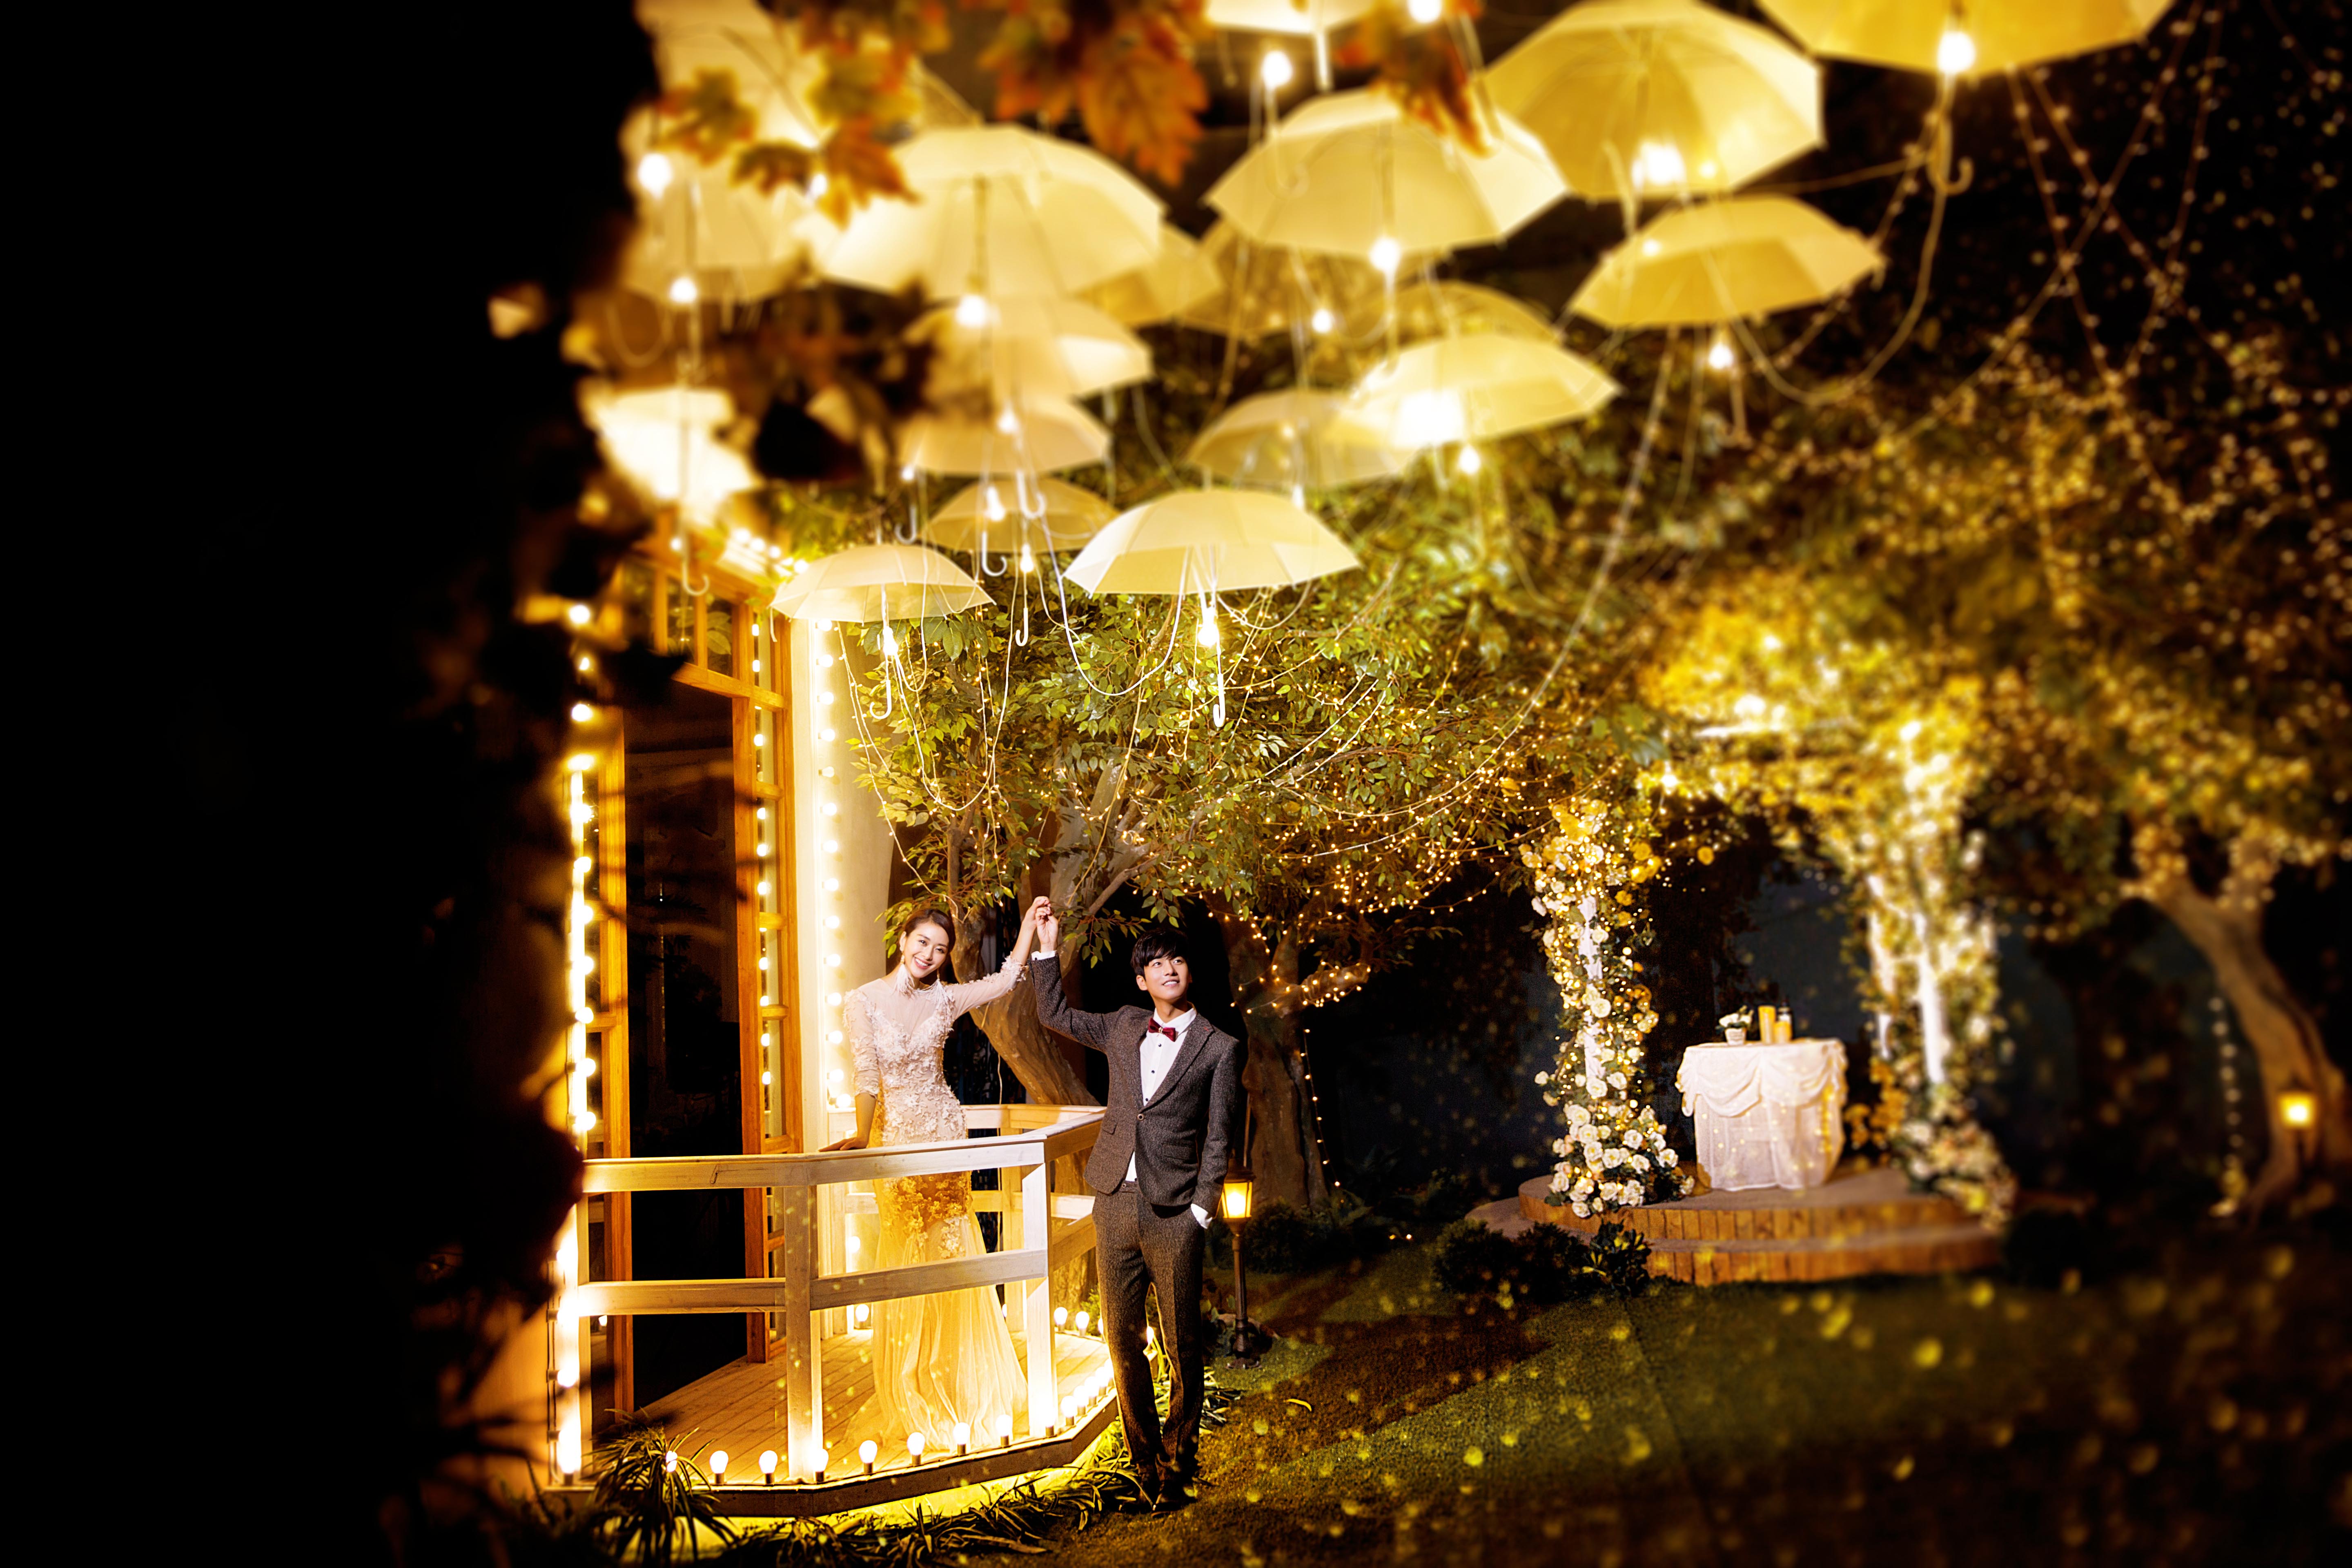 拍好夜景婚纱照的五大要点:郑州艾维美婚纱摄影